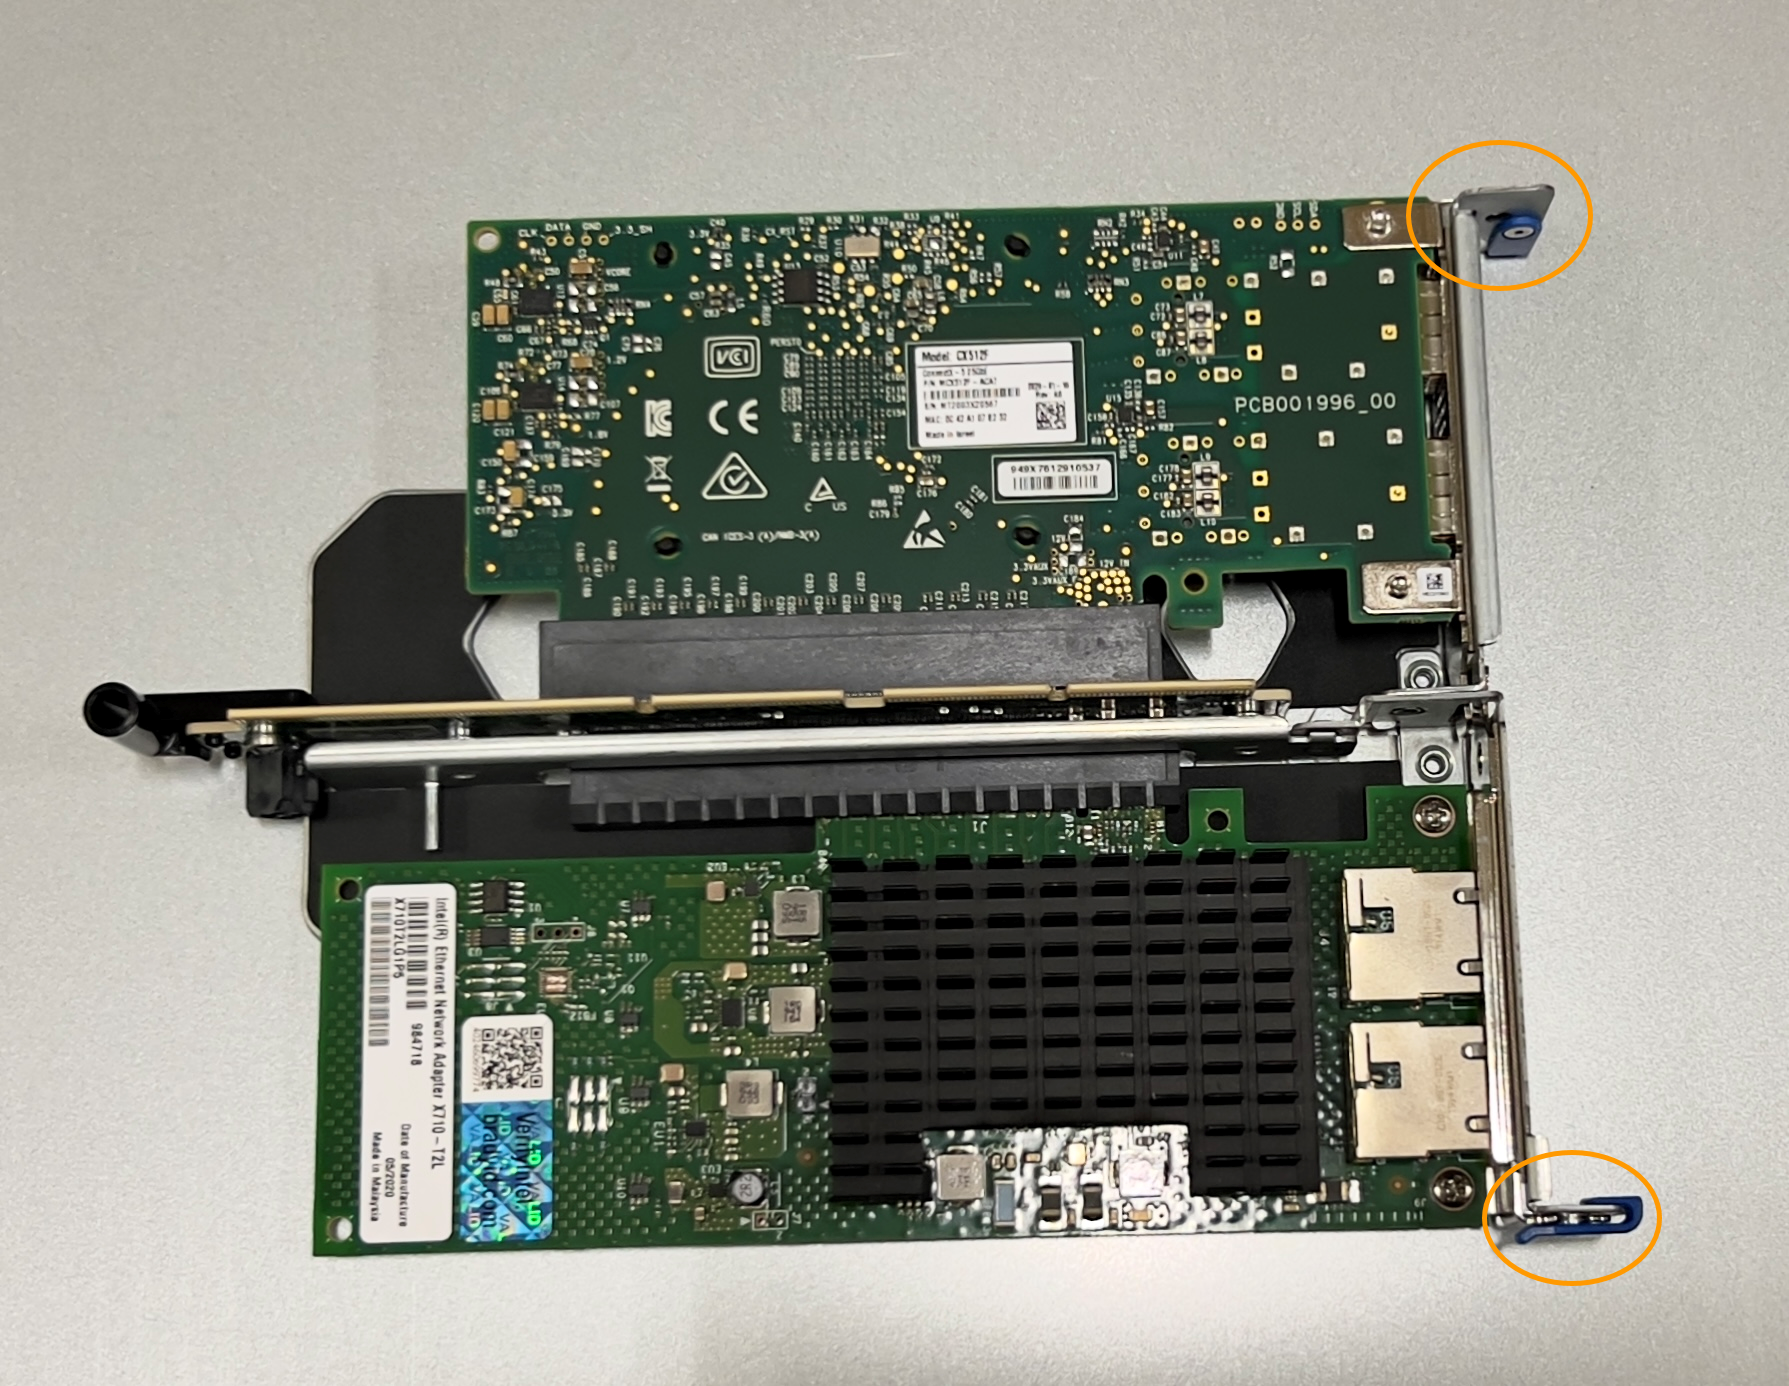 SGF6112 雙插槽擴充卡組件中有兩個 NIC